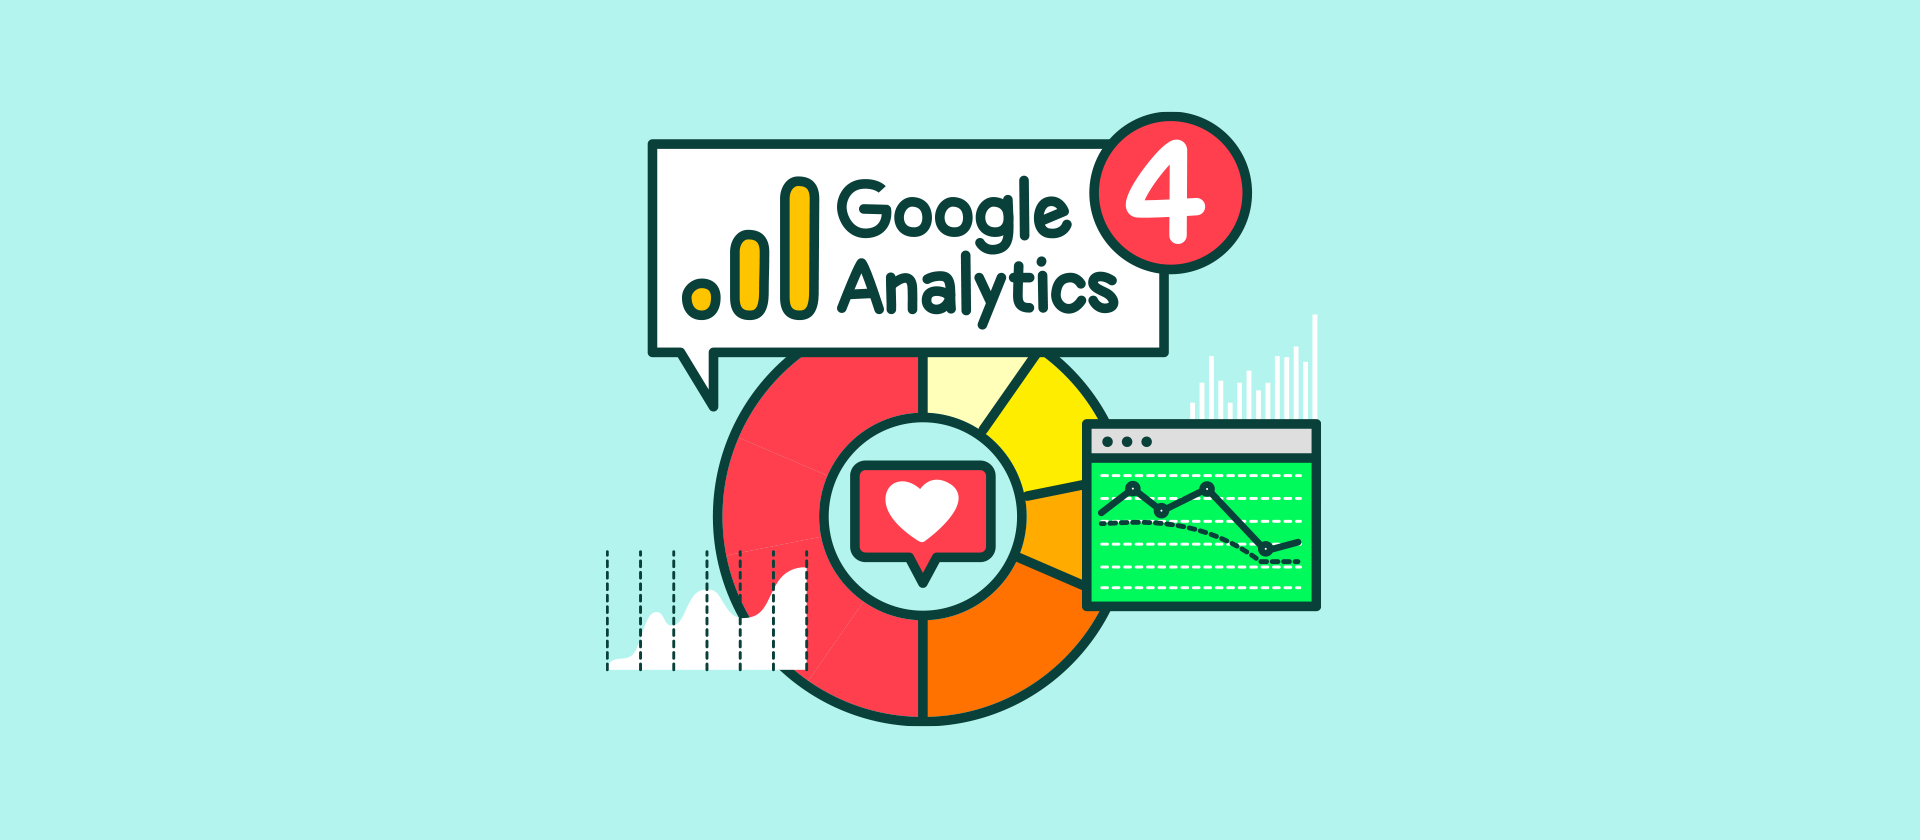 Graphic Google analytics 4